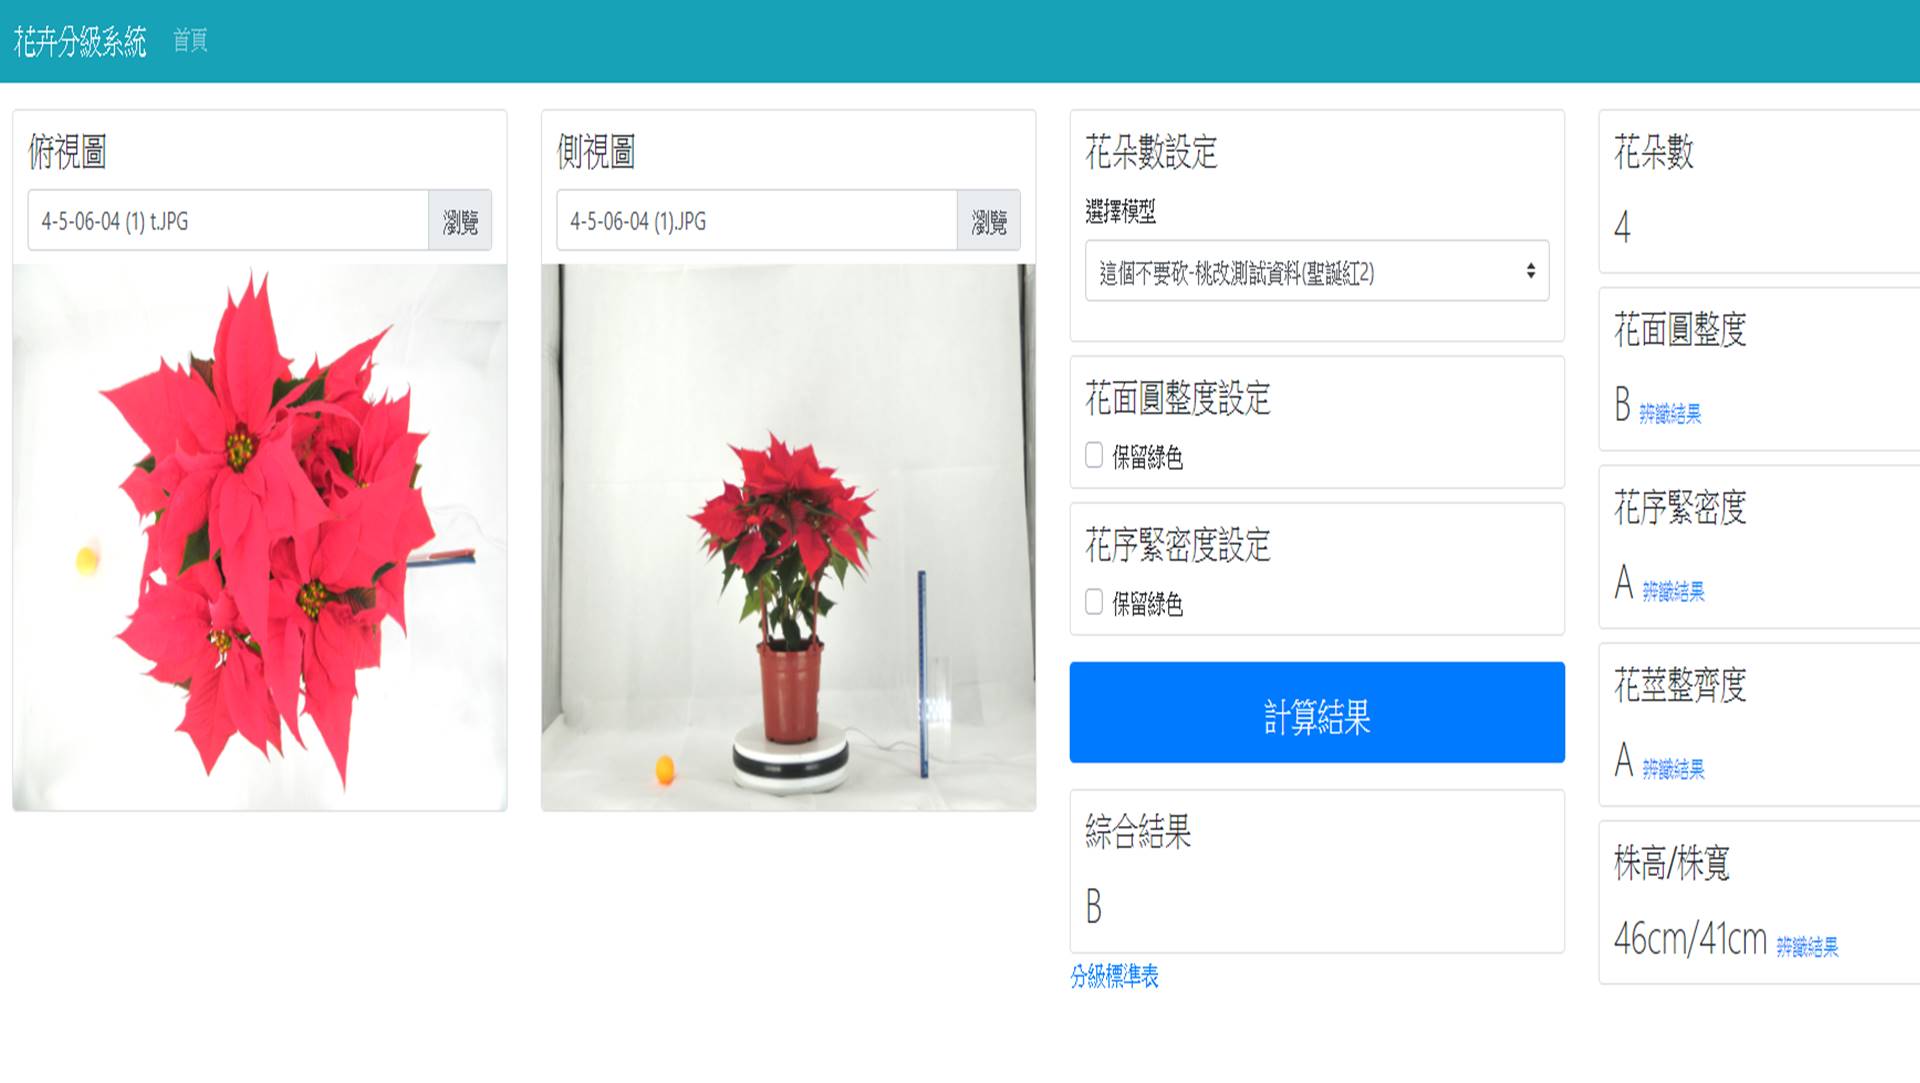 聖誕紅盆花品質分級影像辨識系統操作介面。